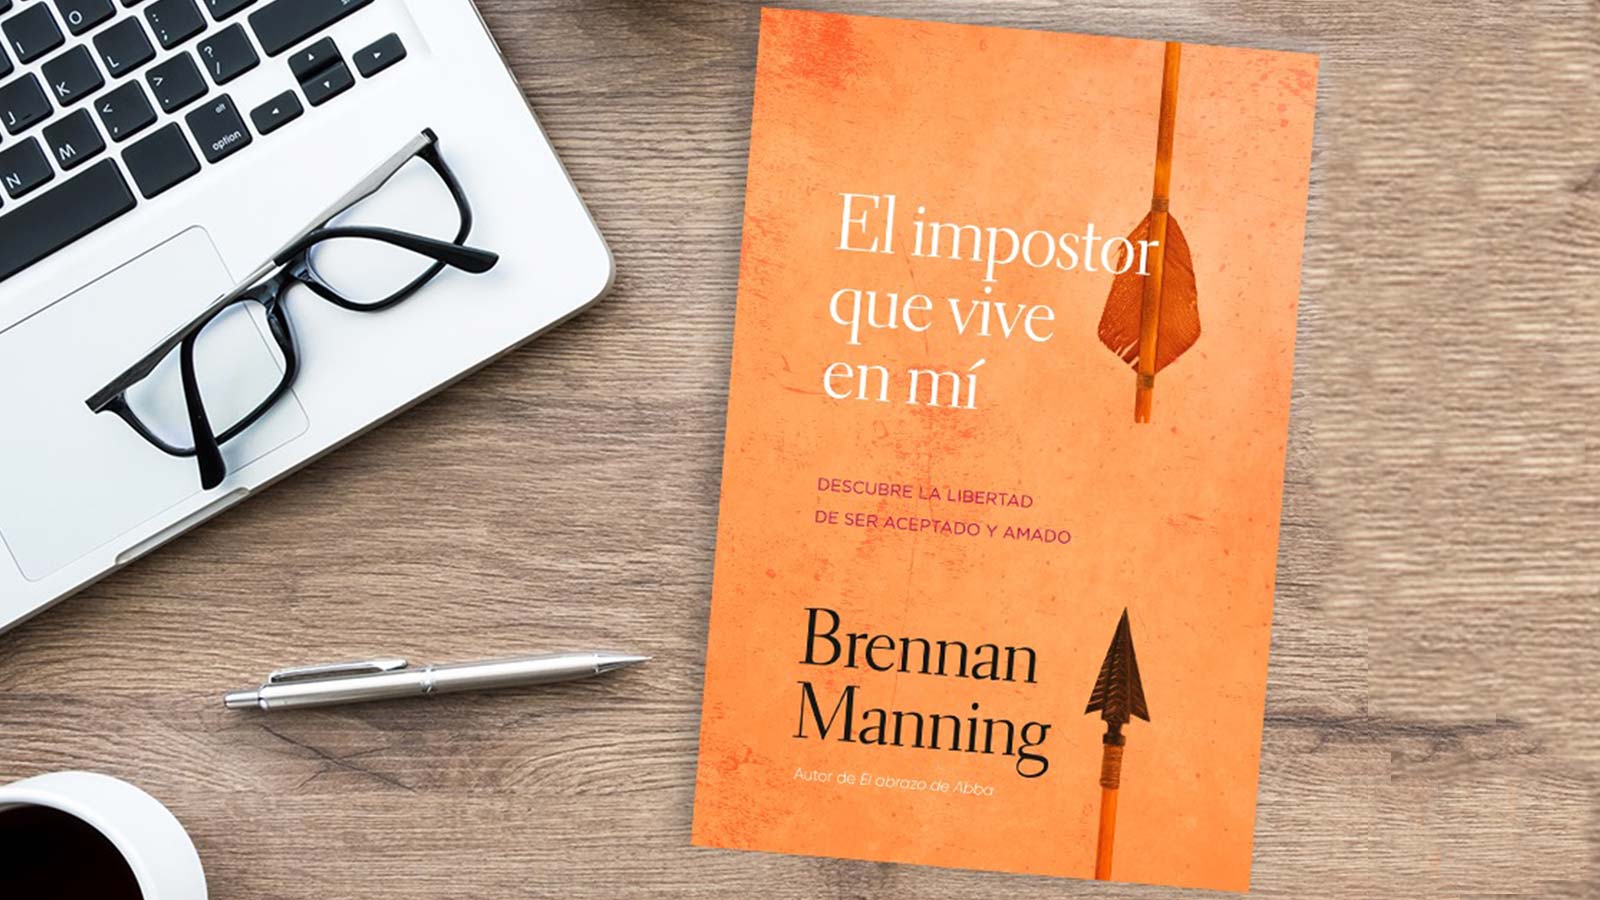 Bernan-Maning-el-impostor-que-vive-en-mi